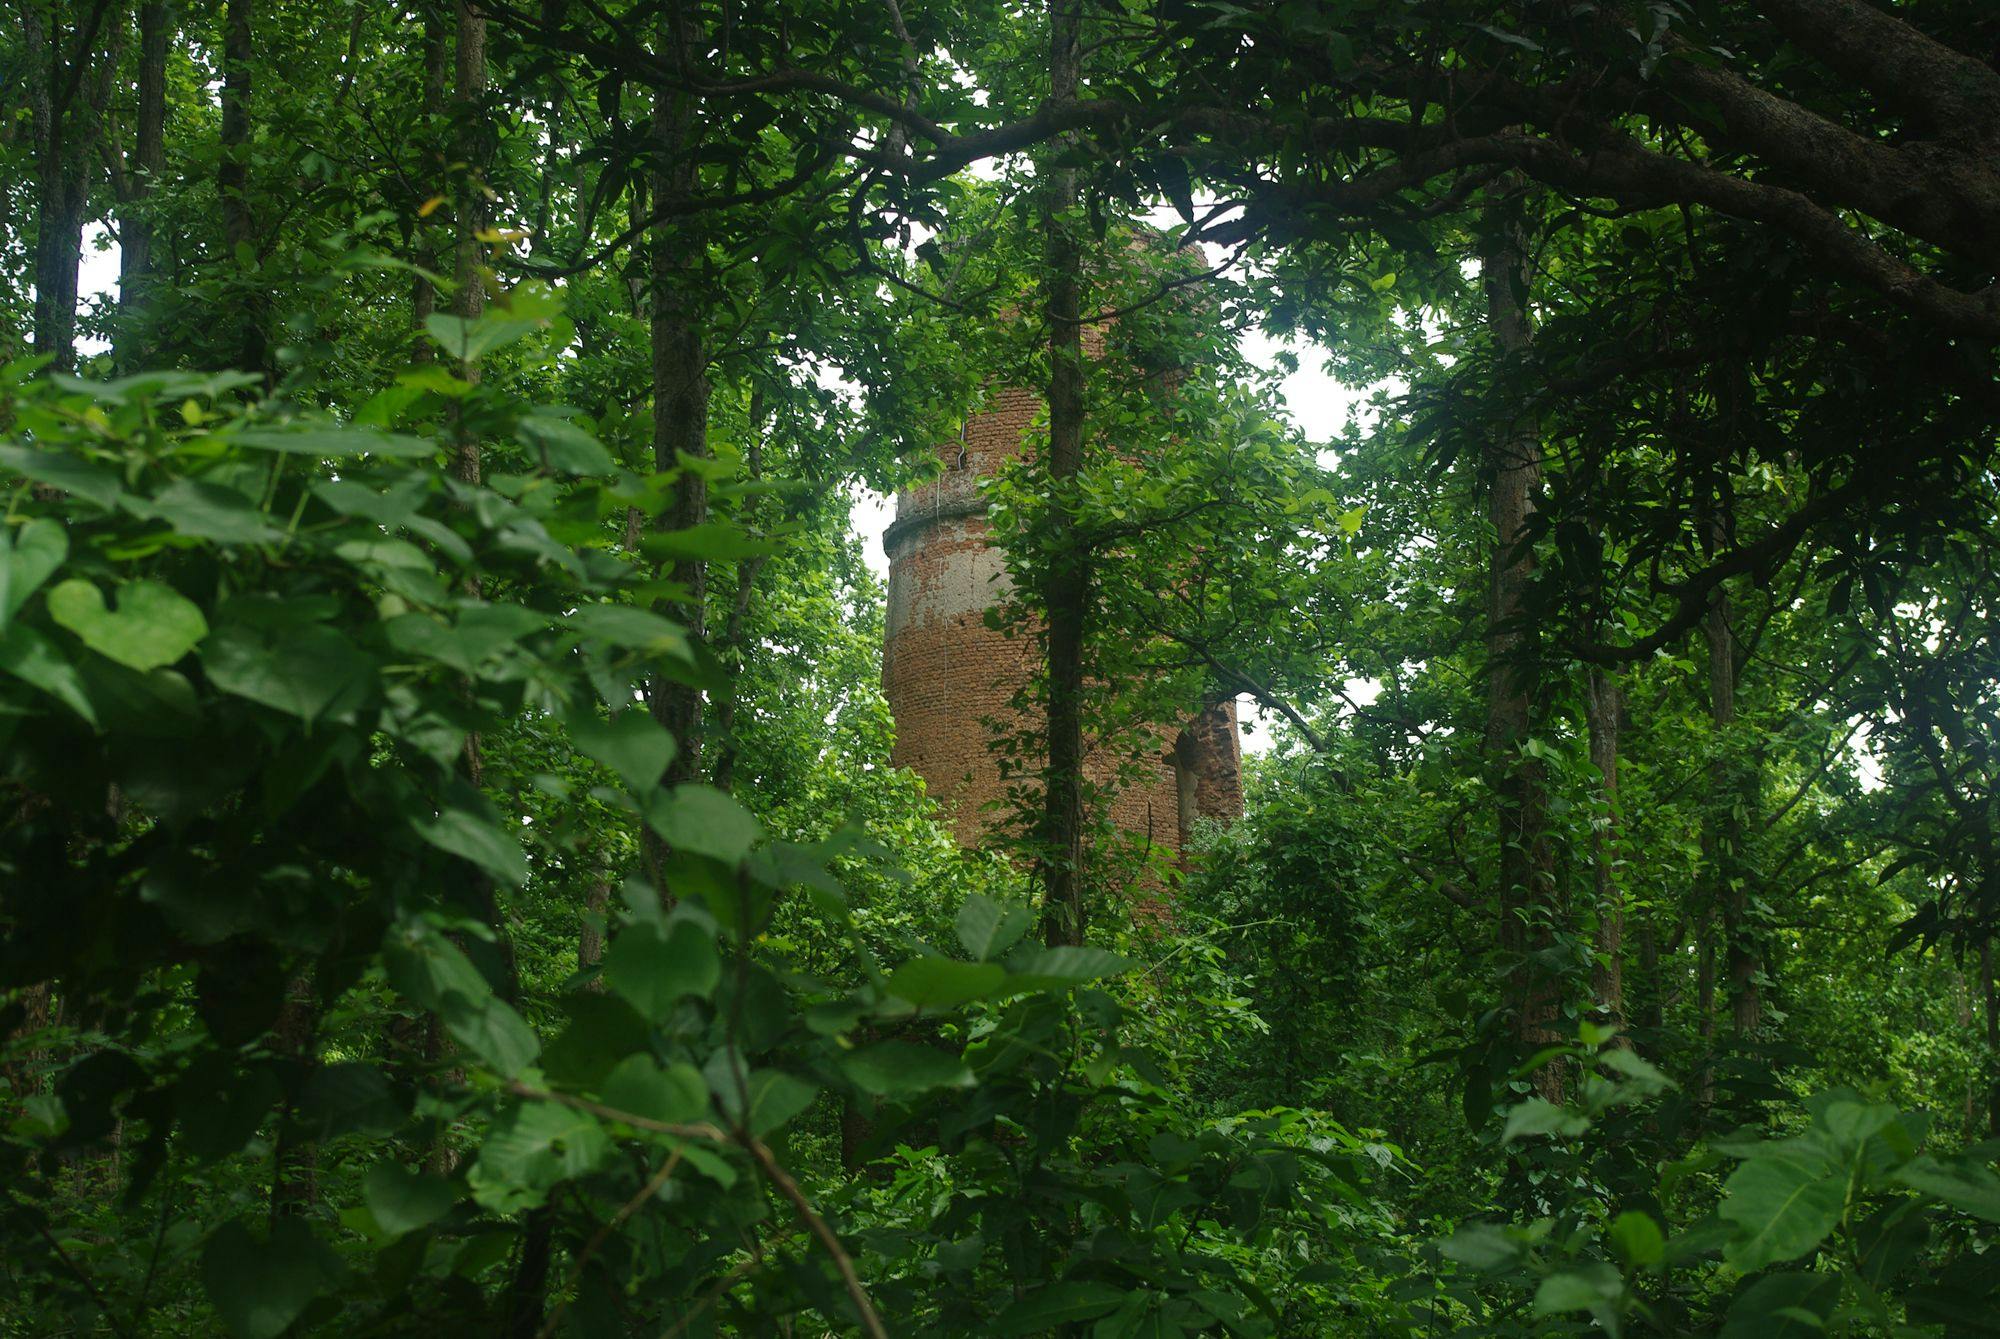 Semaphore Tower, Tantipukur Jungle-Bankura